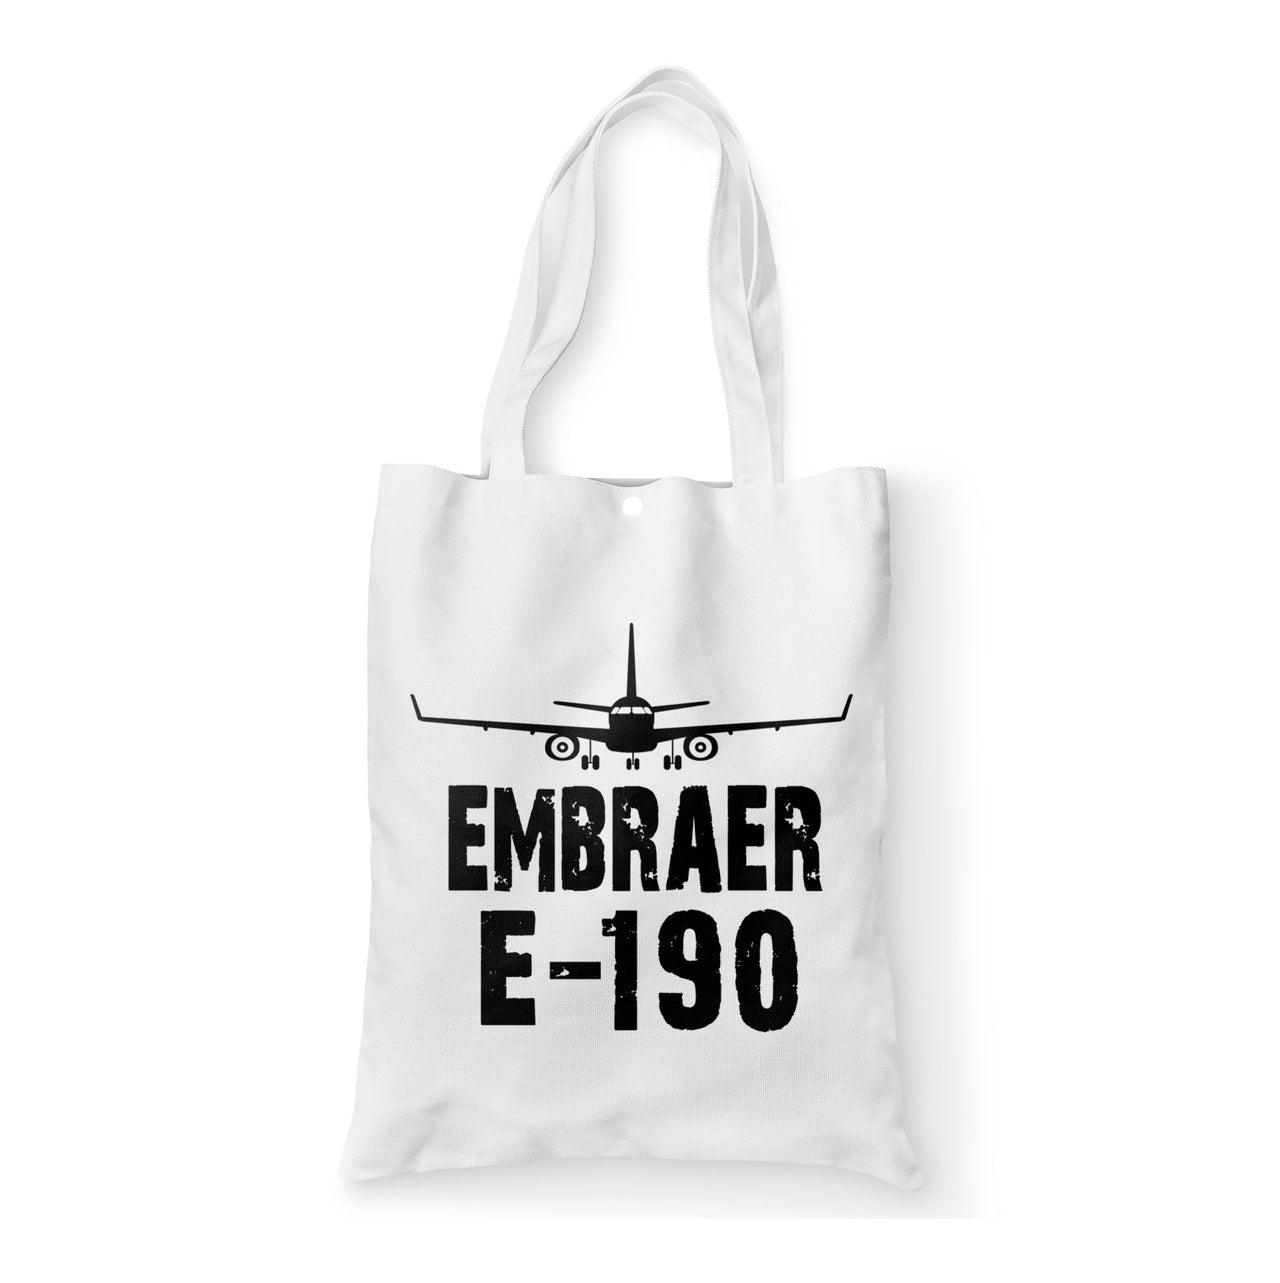 Embraer E-190 & Plane Designed Tote Bags